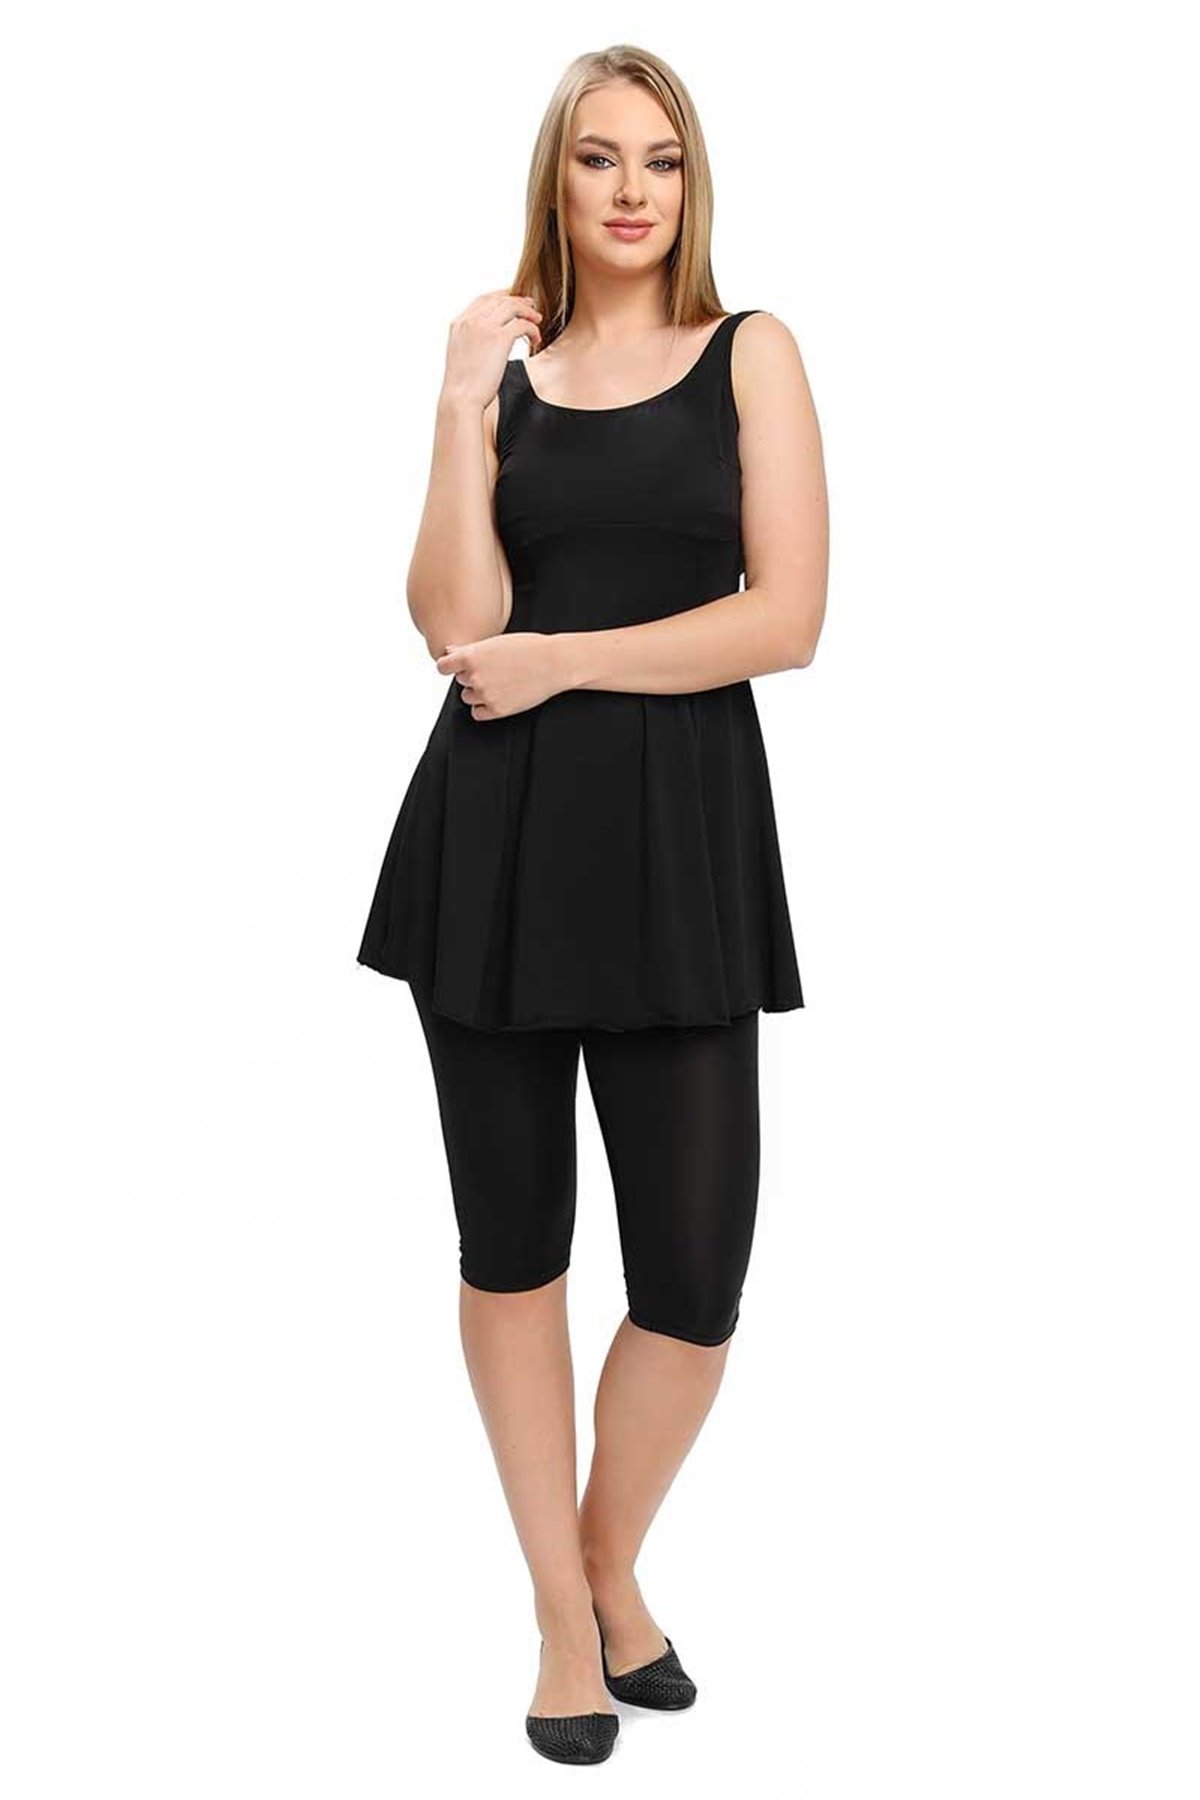 Taytlı Askılı Elbise Mayo, Havuz Mayo Cersy 3208002 Siyah